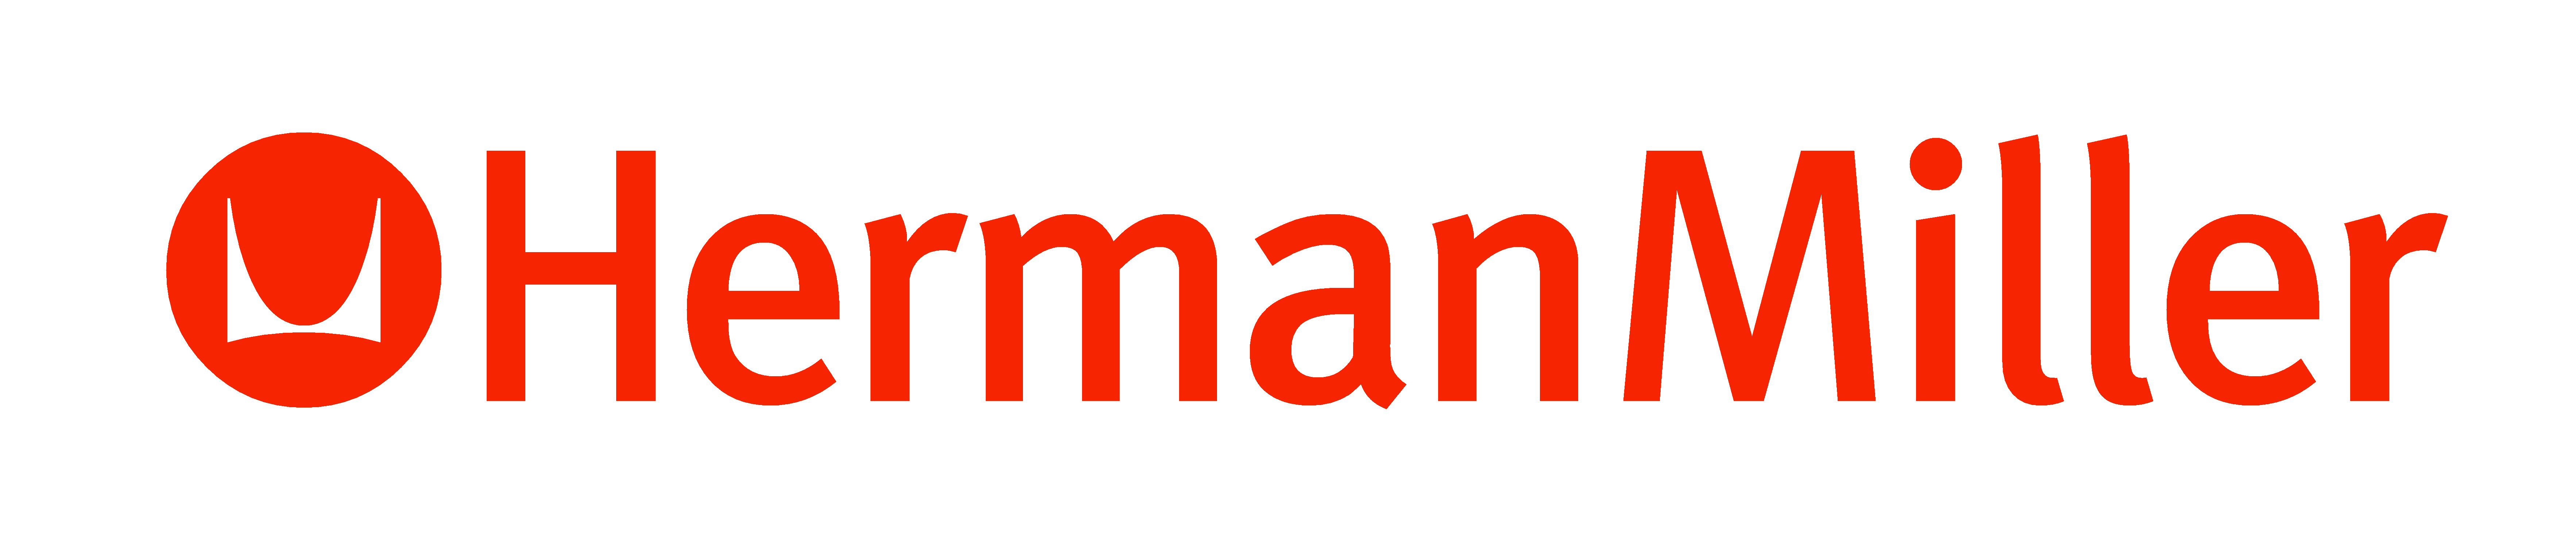 Herman Miller Inc. logo